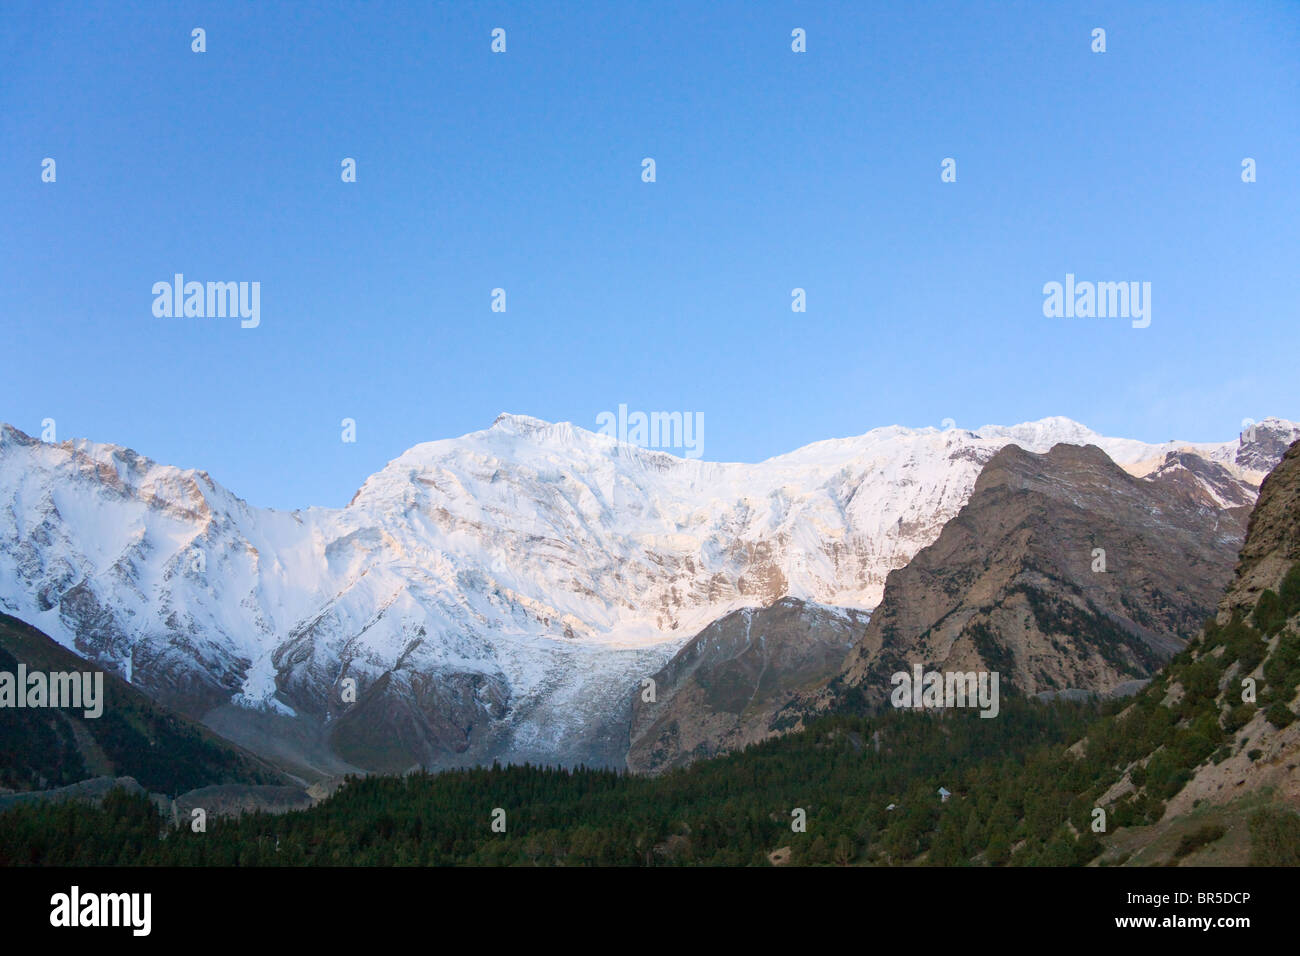 Aoyitage Peak, Pamir Plateau, Xinjiang, China Stock Photo